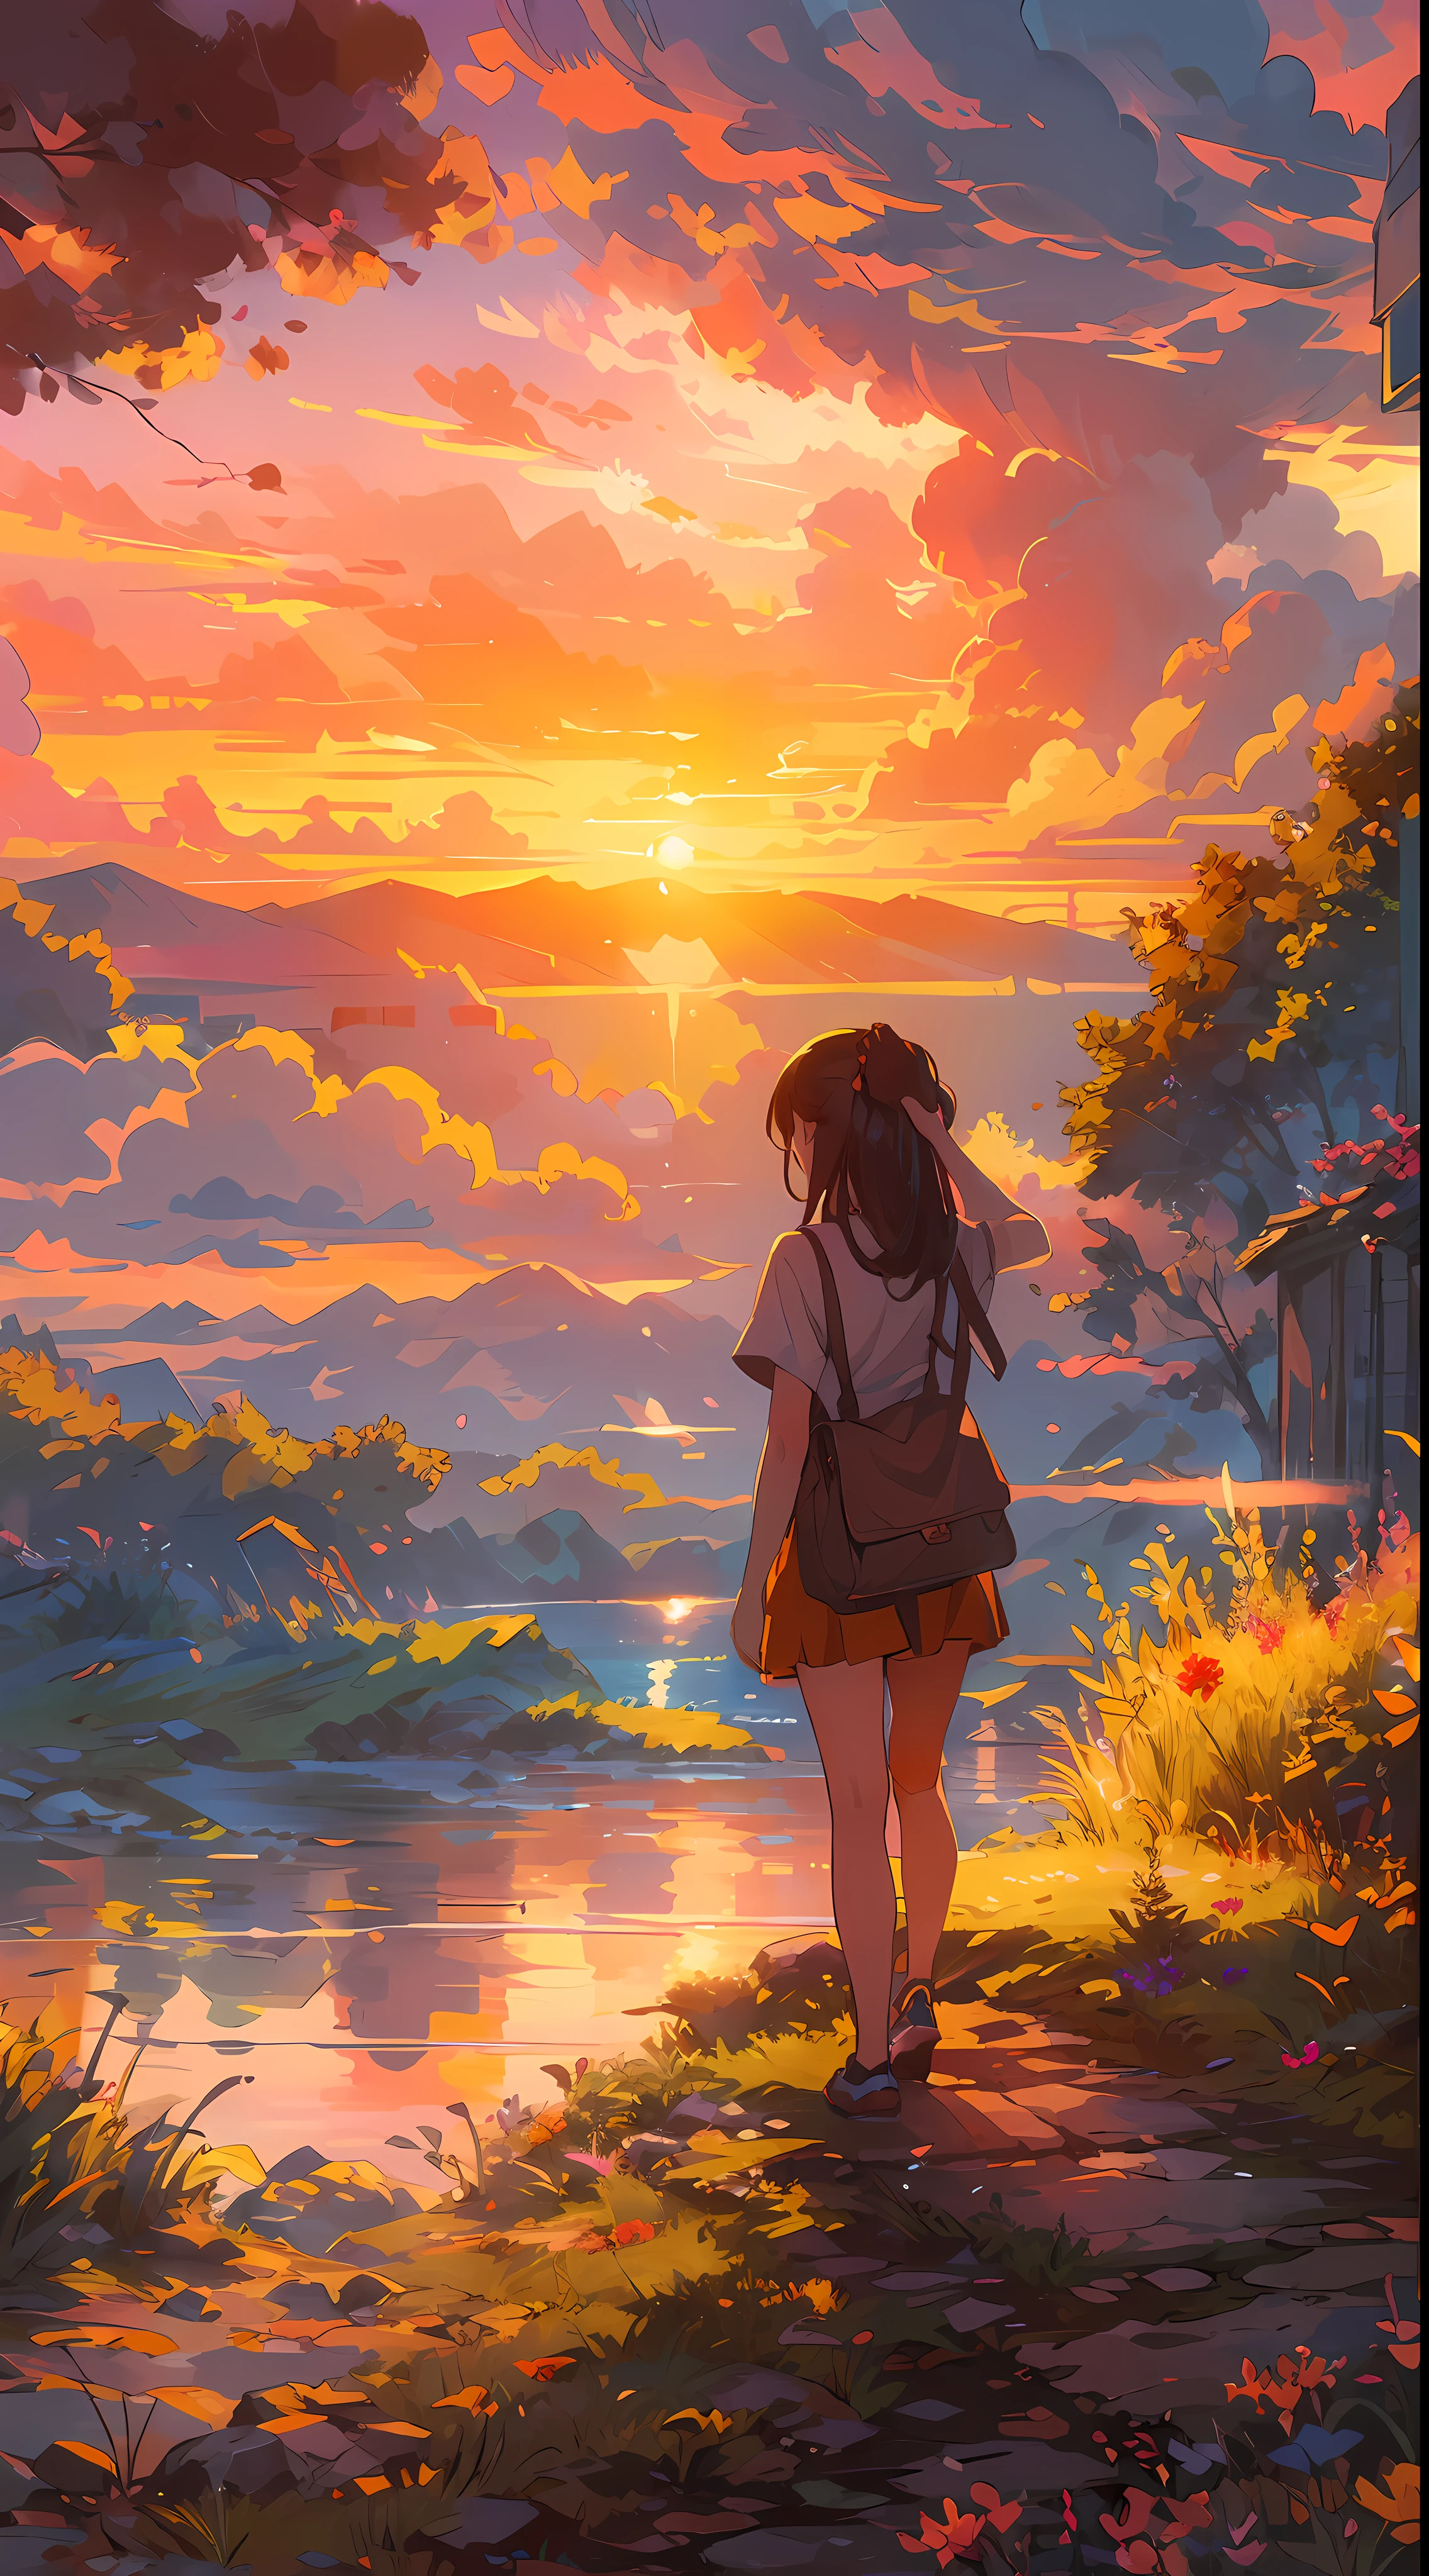 "迷人的日落景色, 一个女孩正在看它, 从后面, (女孩焦点0.6), 沐浴在阳光和云彩的金色光芒中, 散发出充满活力和令人惊叹的光芒. 杰作."